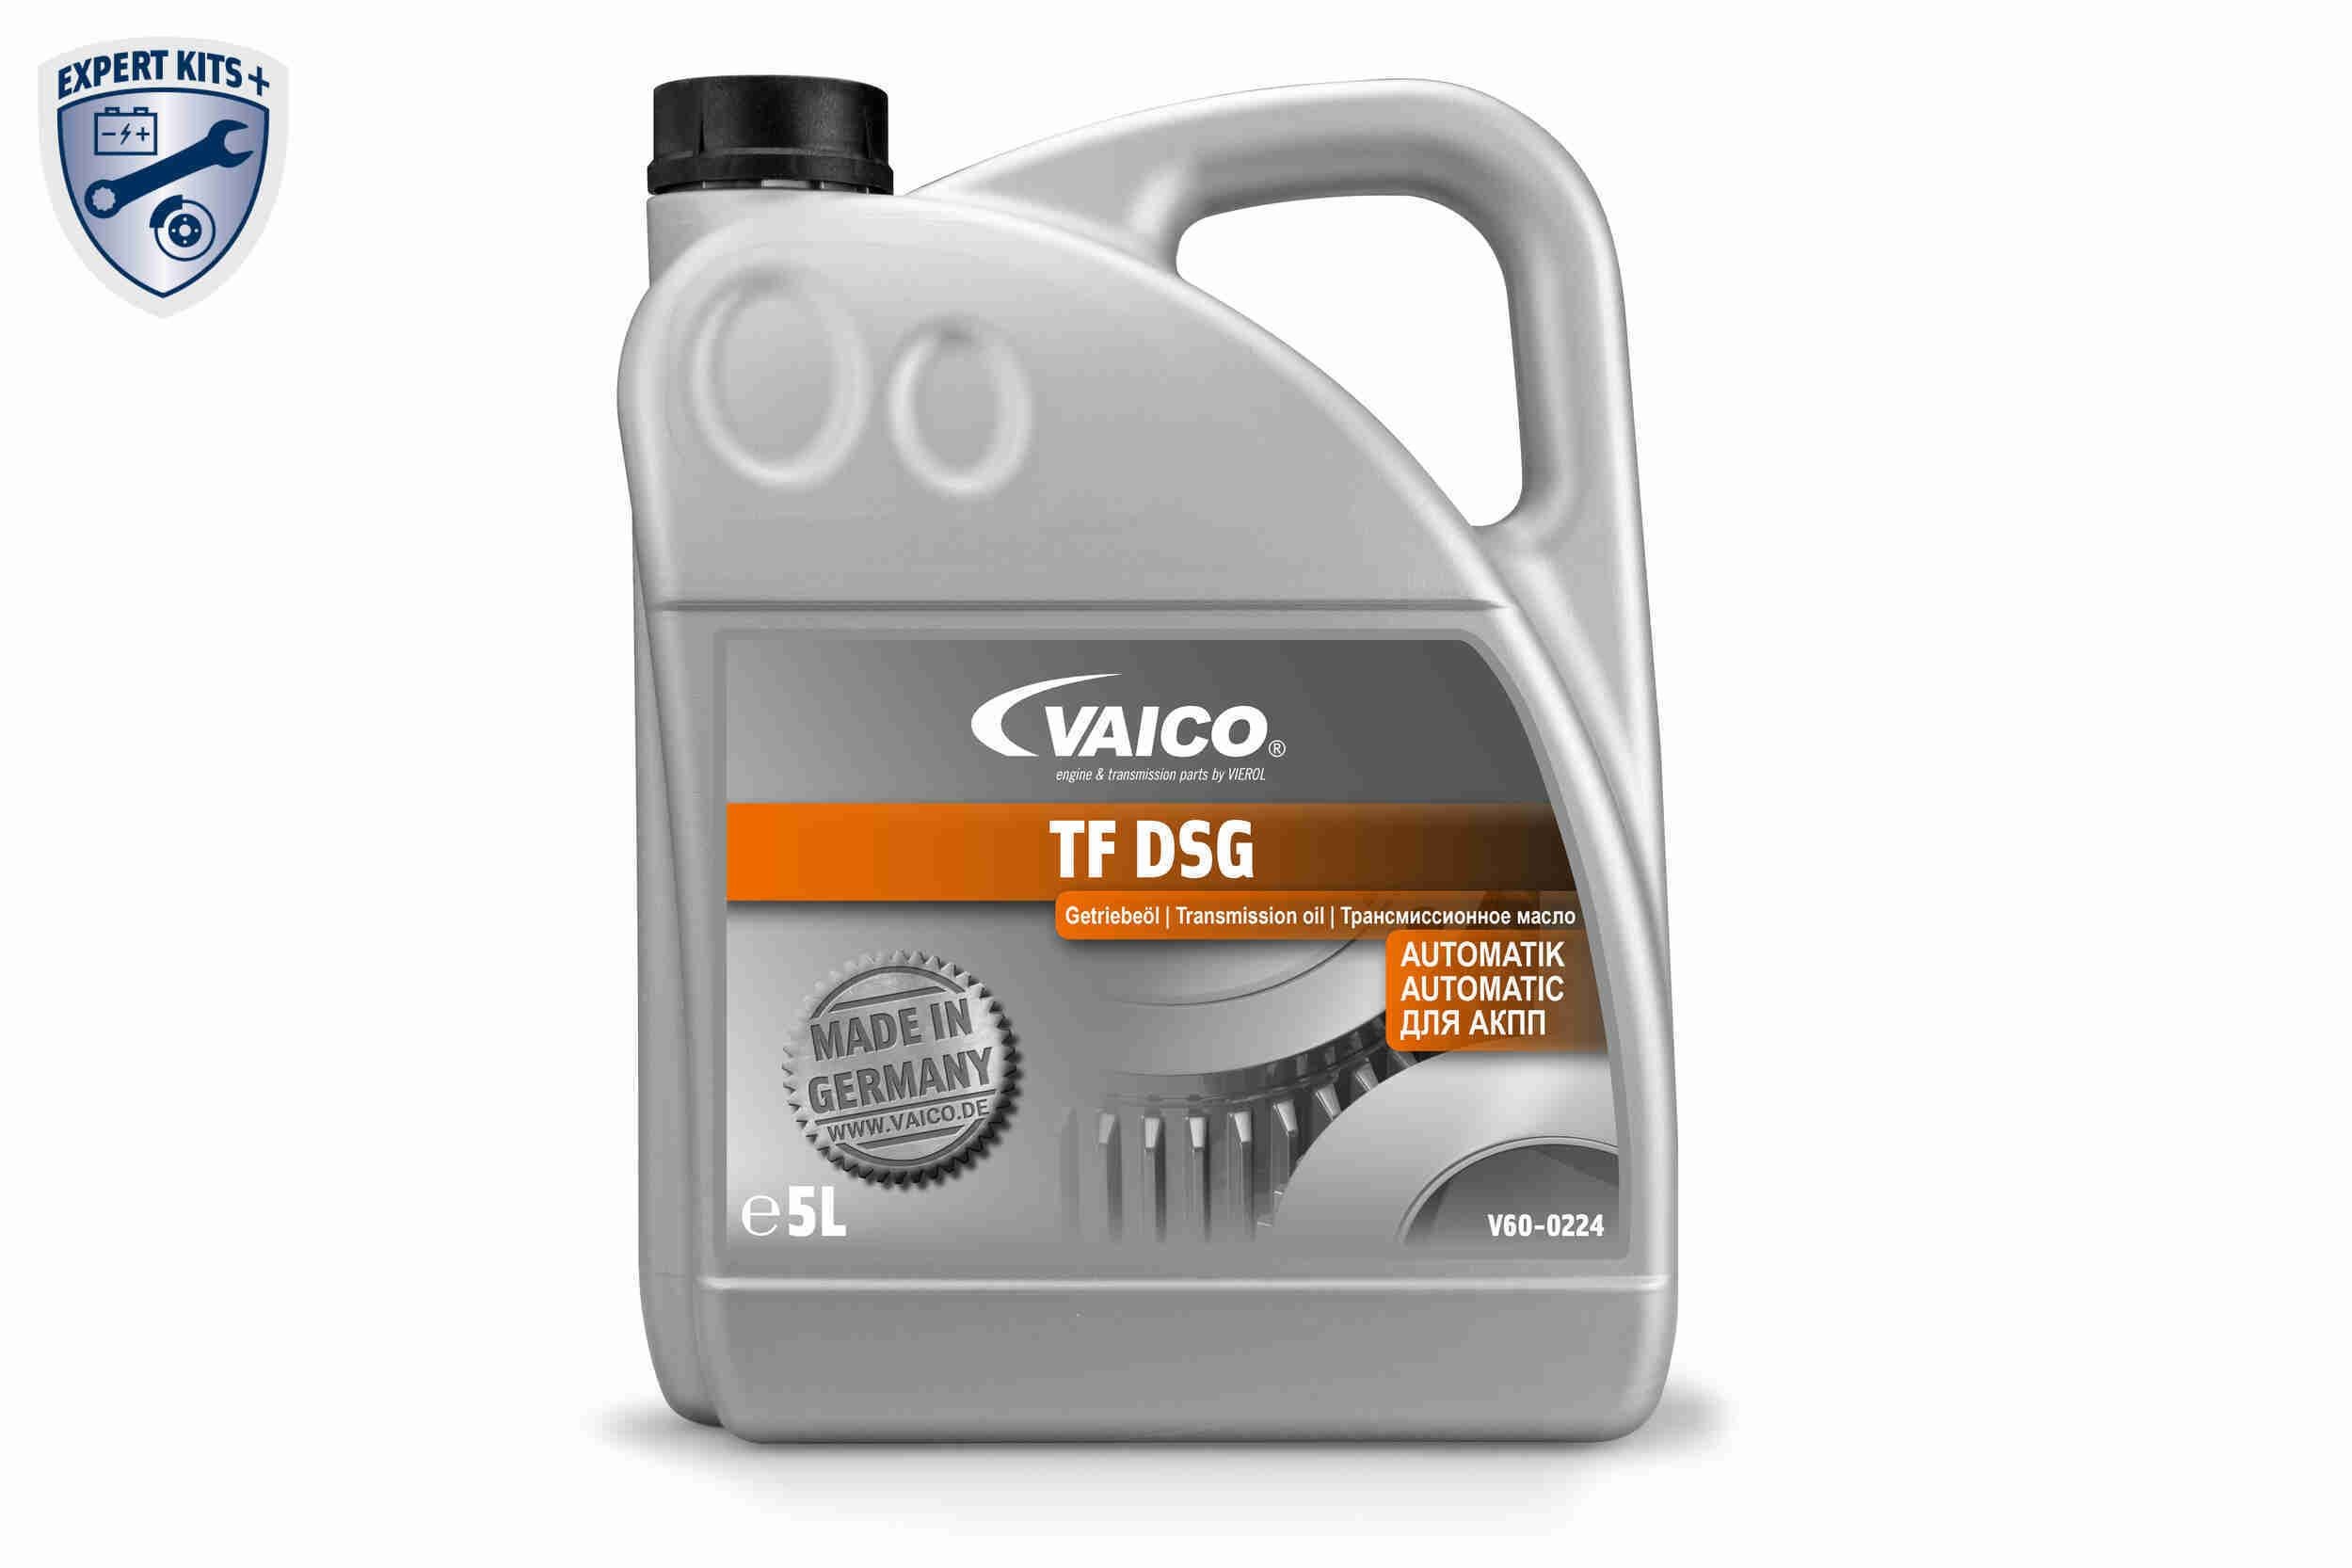 VAICO V60-0224 Differentialöl ATF DSG, 5l, gelb